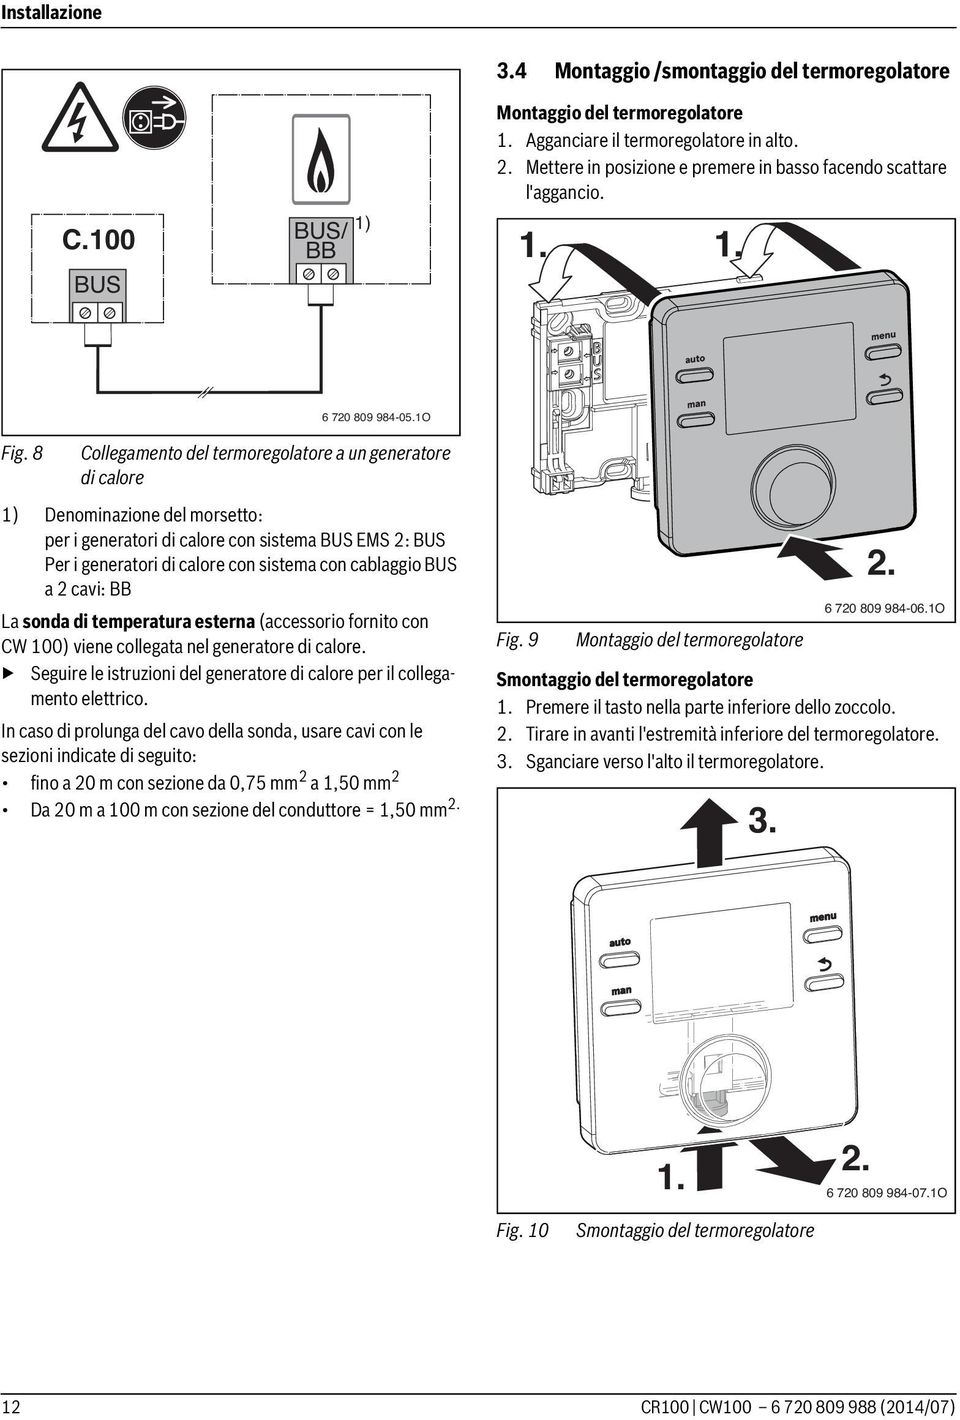 8 Collegamento del termoregolatore a un generatore di calore 1) Denominazione del morsetto: per i generatori di calore con sistema BUS EMS 2: BUS Per i generatori di calore con sistema con cablaggio